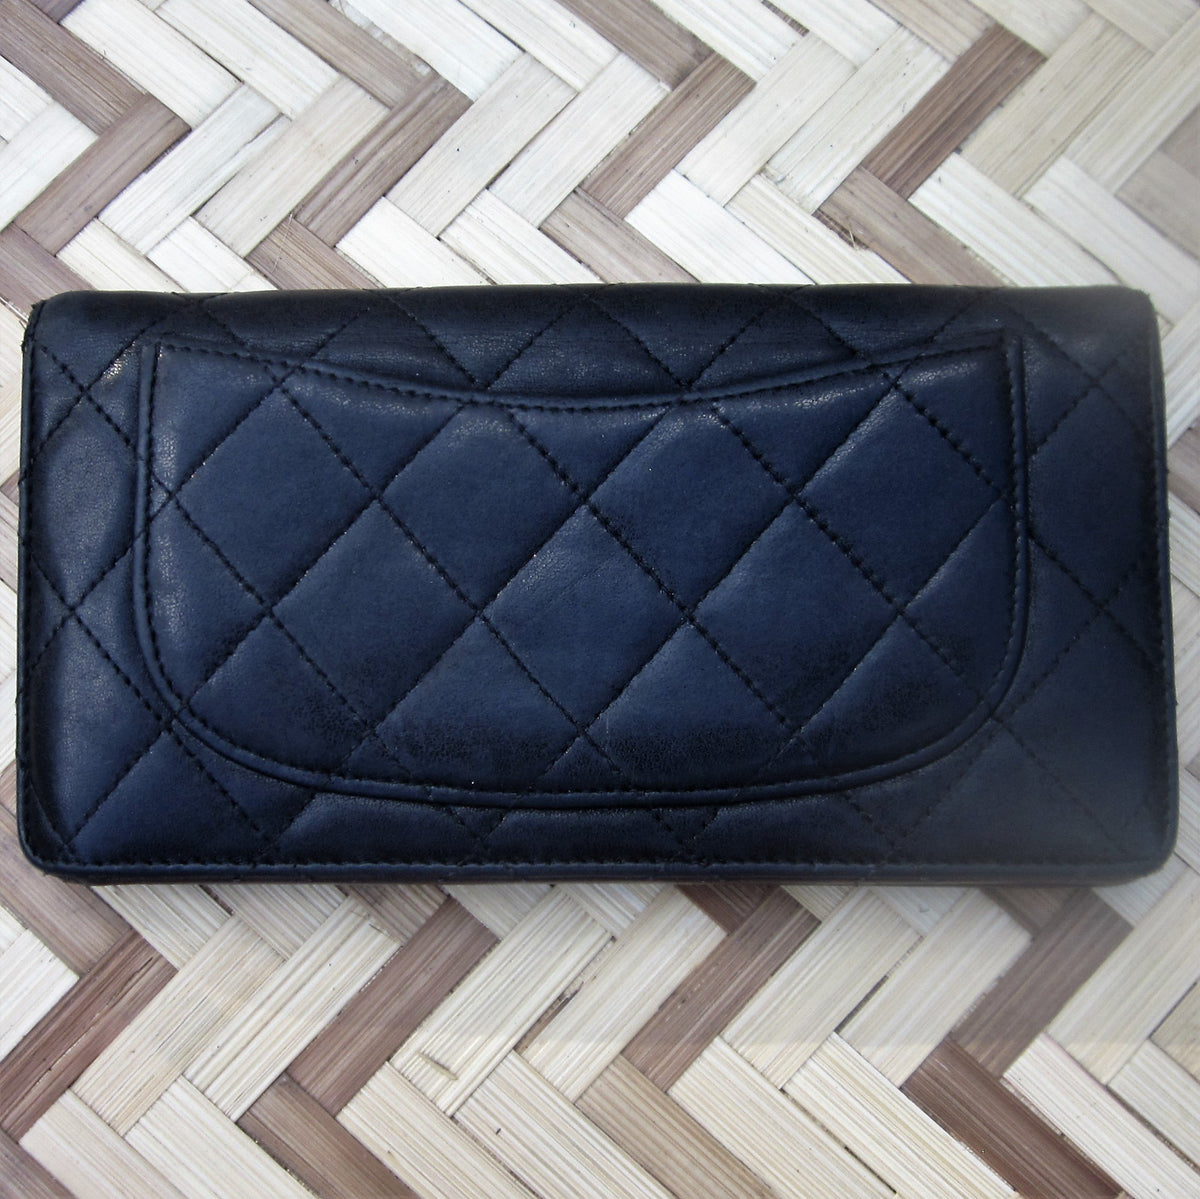 Chanel - Blue Quilted Lambskin Zip Around Wallet